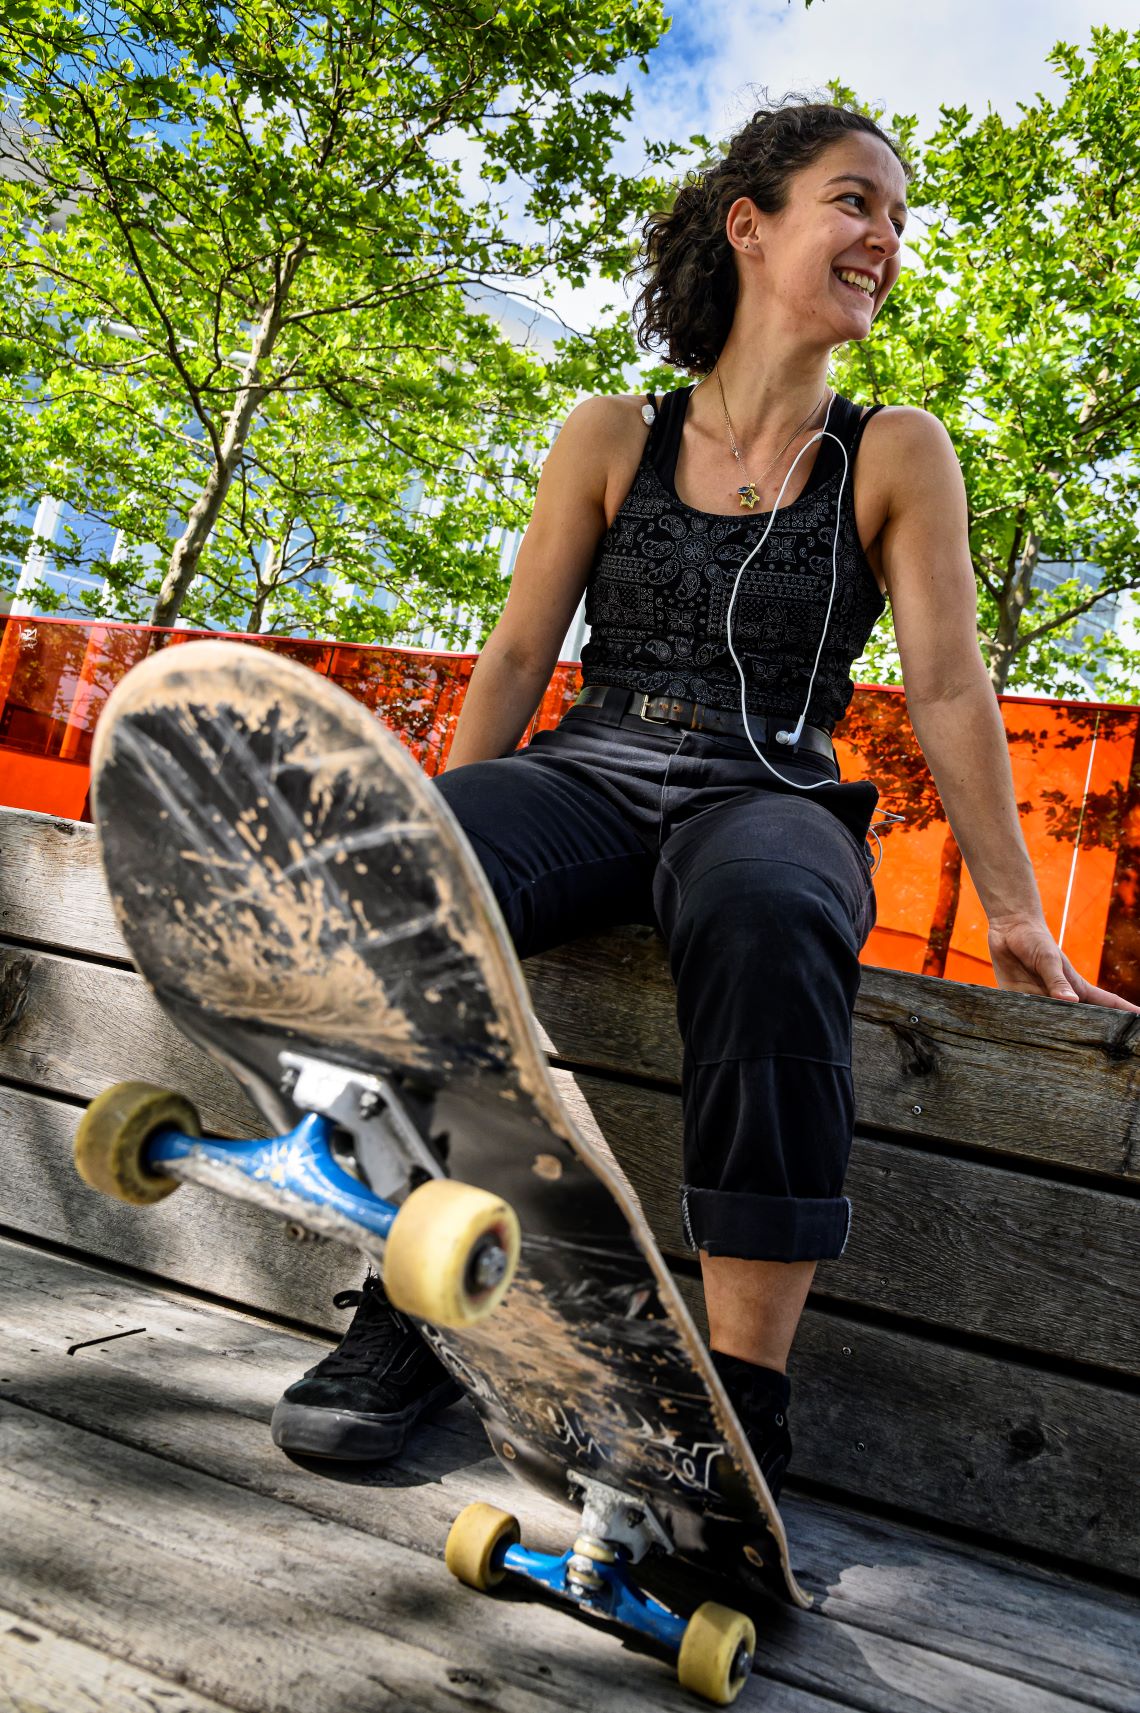 Eine Frau sitzt lächelnd auf einer Bank und schaut nach links. Ihr Fuß steht auf einem Skateboard, das im Vordergrund des Fotos abgestützt ist.